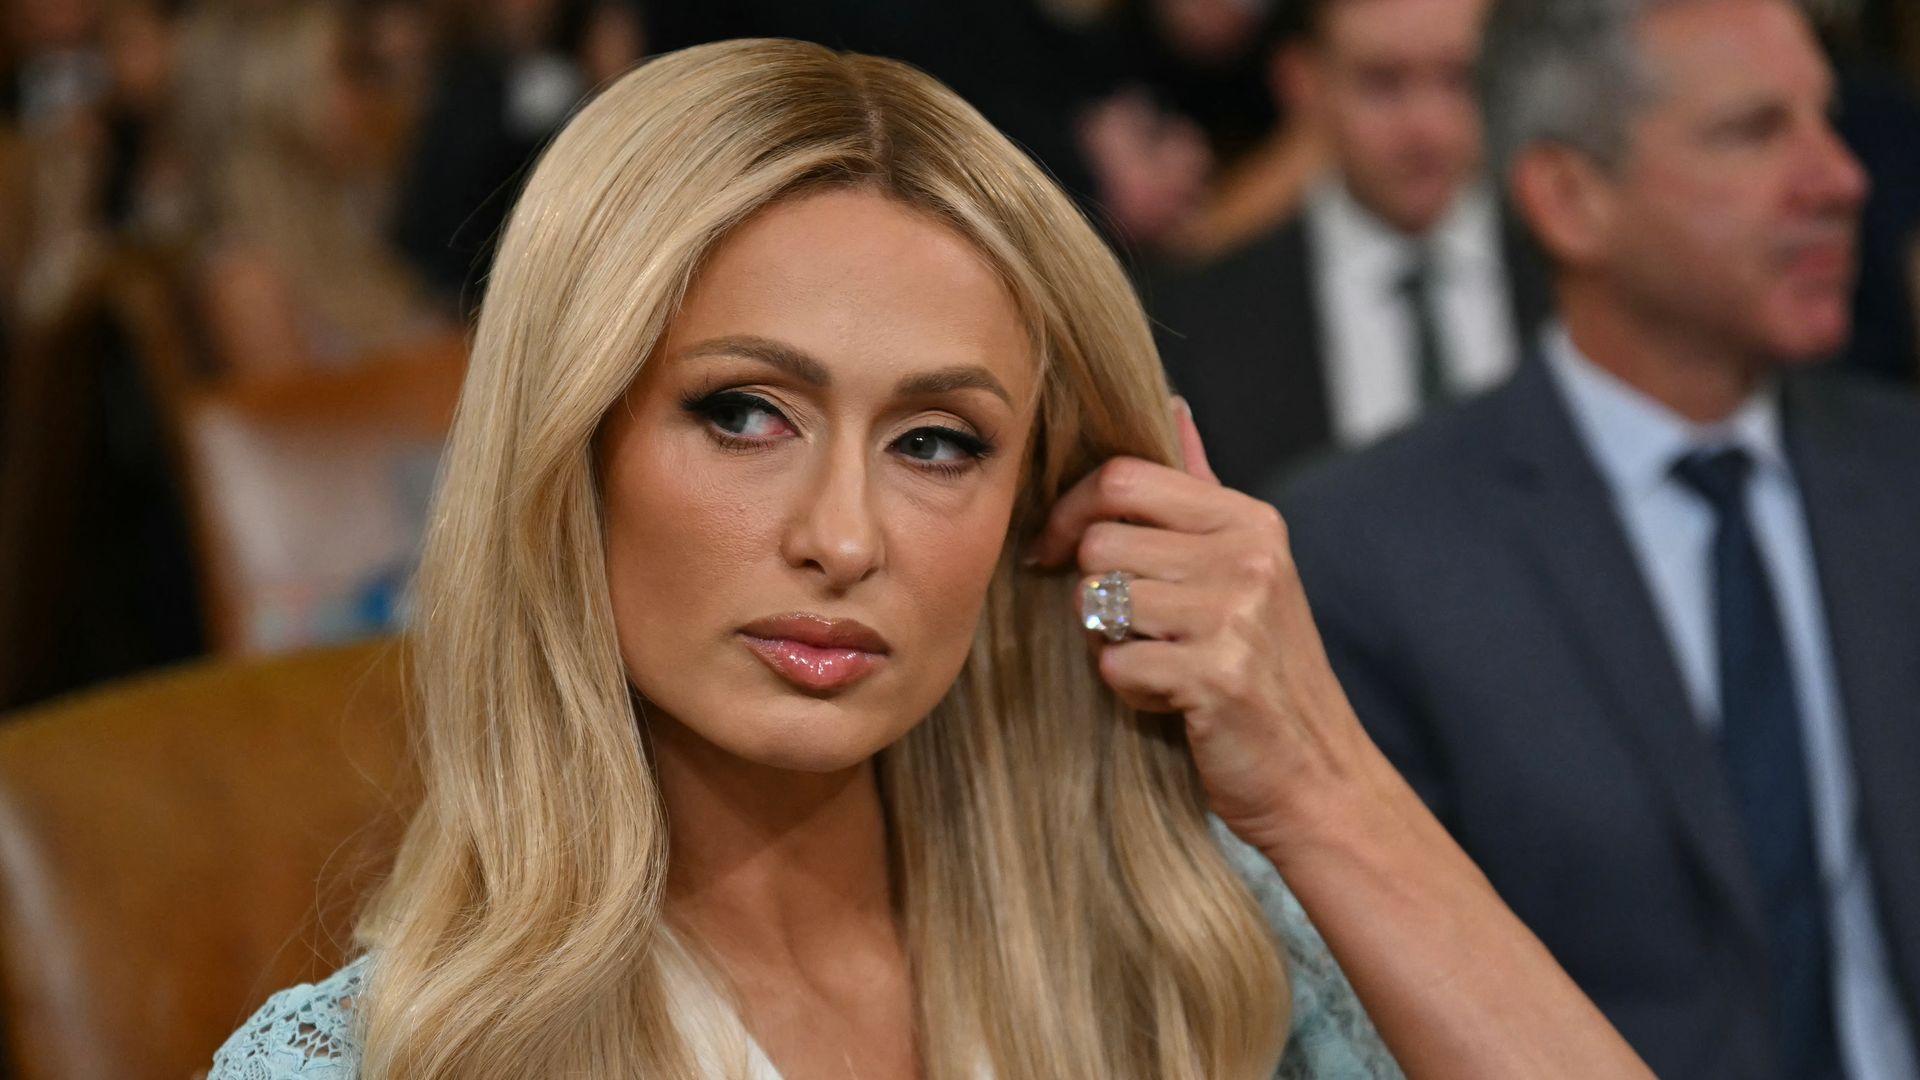 Paris Hilton expone ante el Congreso su valiente testimonio como víctima de abuso